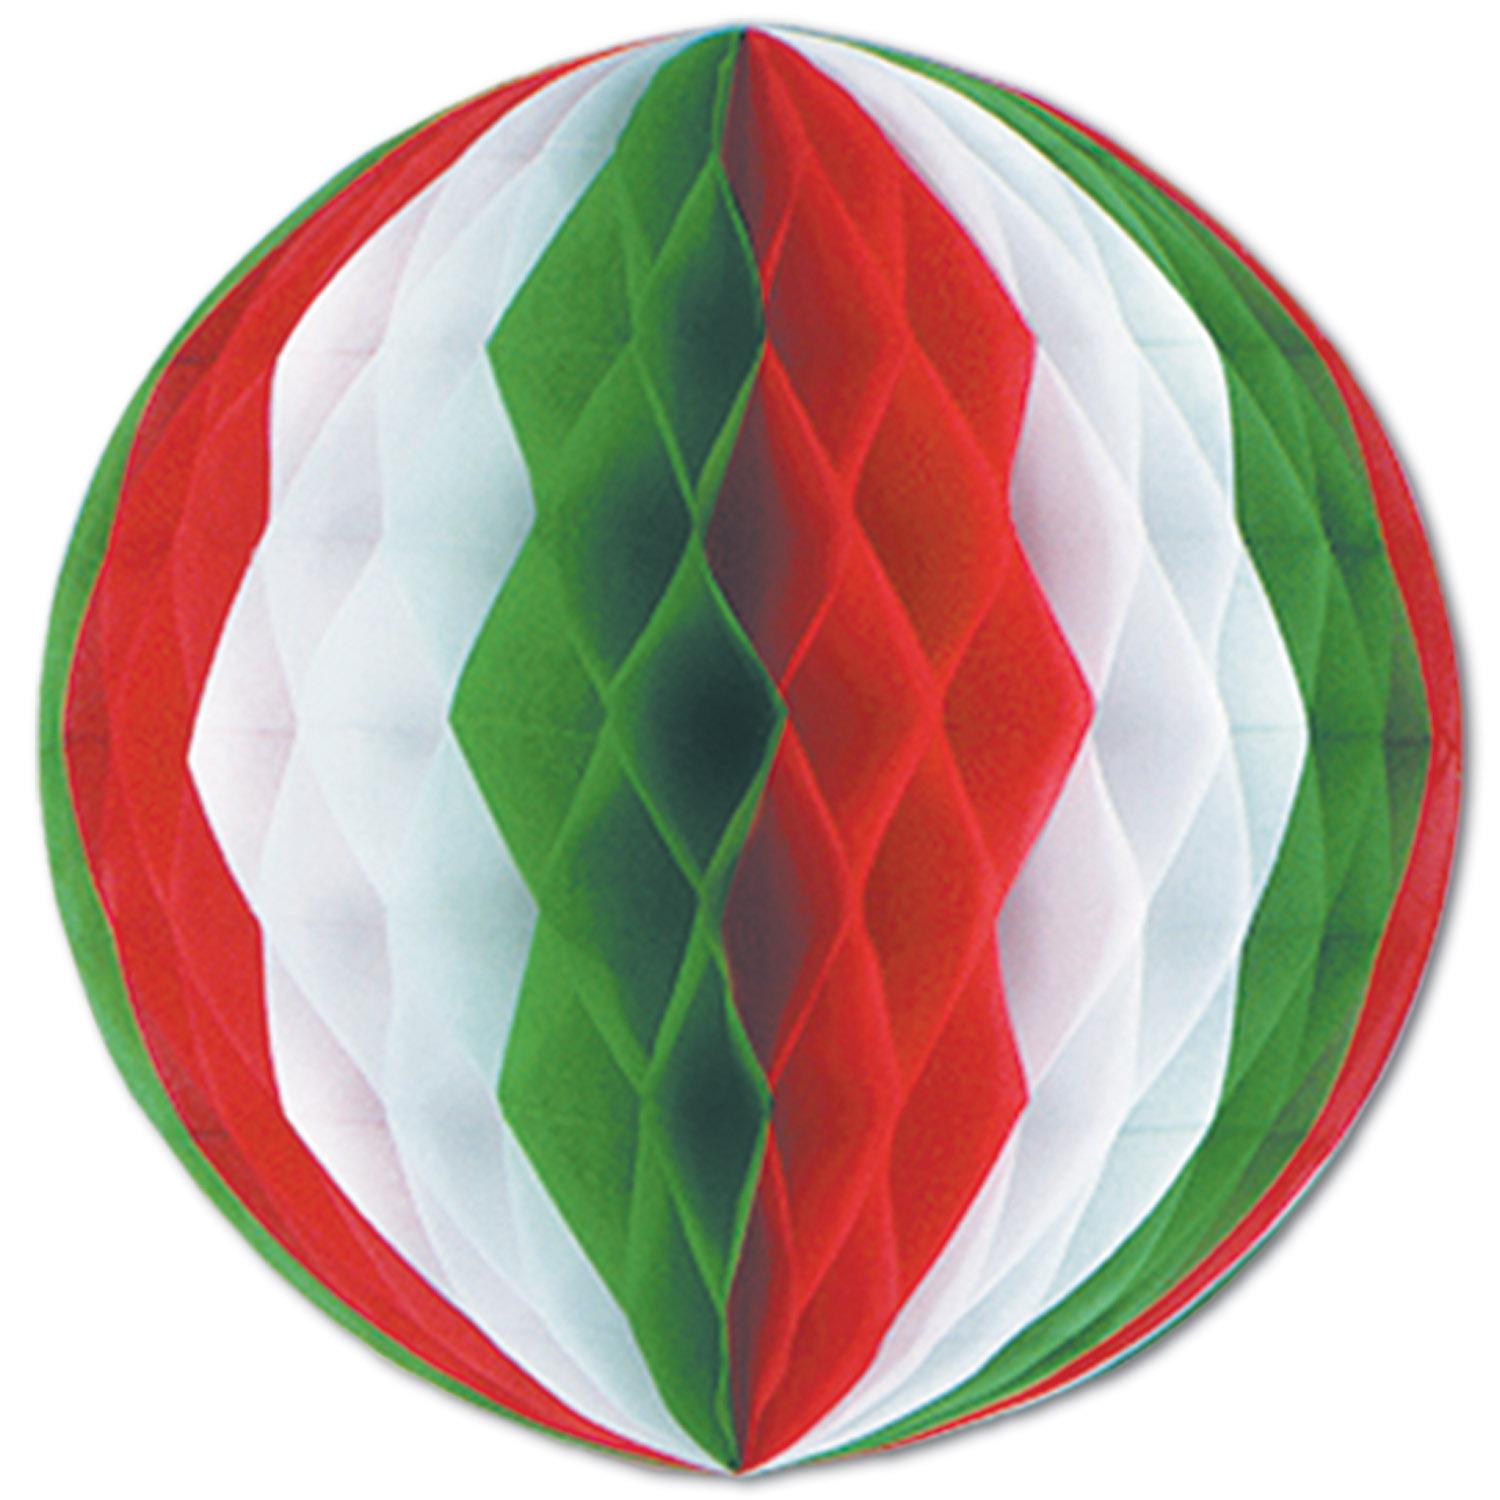 Beistle Fiesta Tissue Ball - red - white - green